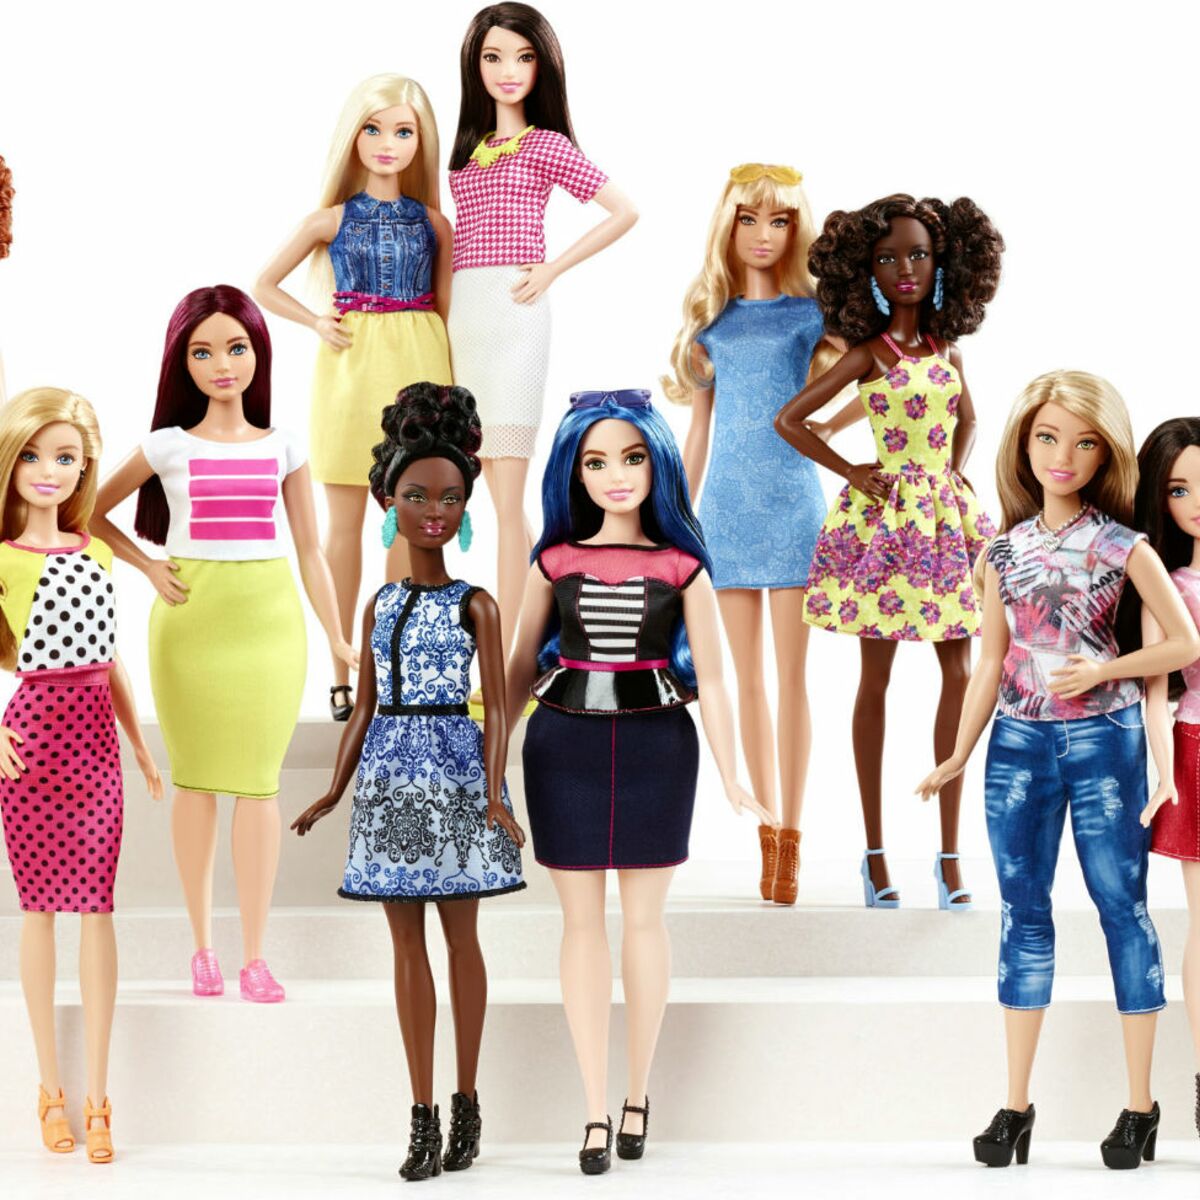 Pourquoi Barbie est-elle scandaleuse ? : Femme Actuelle Le MAG